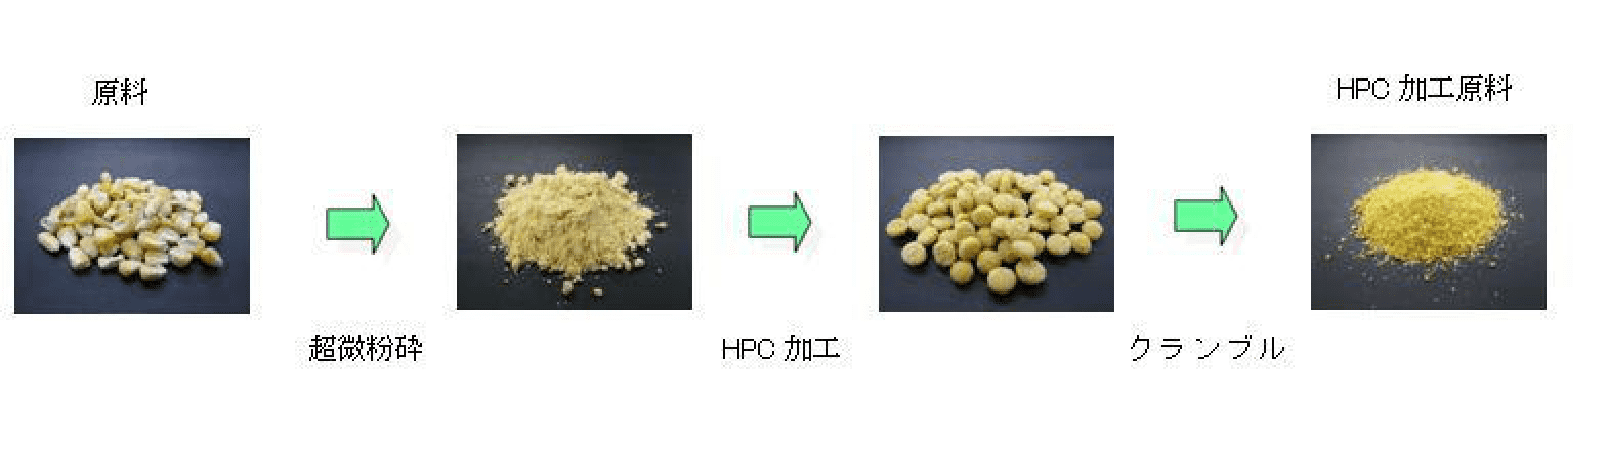 HPC製法（ハイ・プロセスド・シリアルズ）とは穀物原料を高温・高圧で加工することにより、原料の持つ栄養価値・消化吸収性を向上させる製法です。